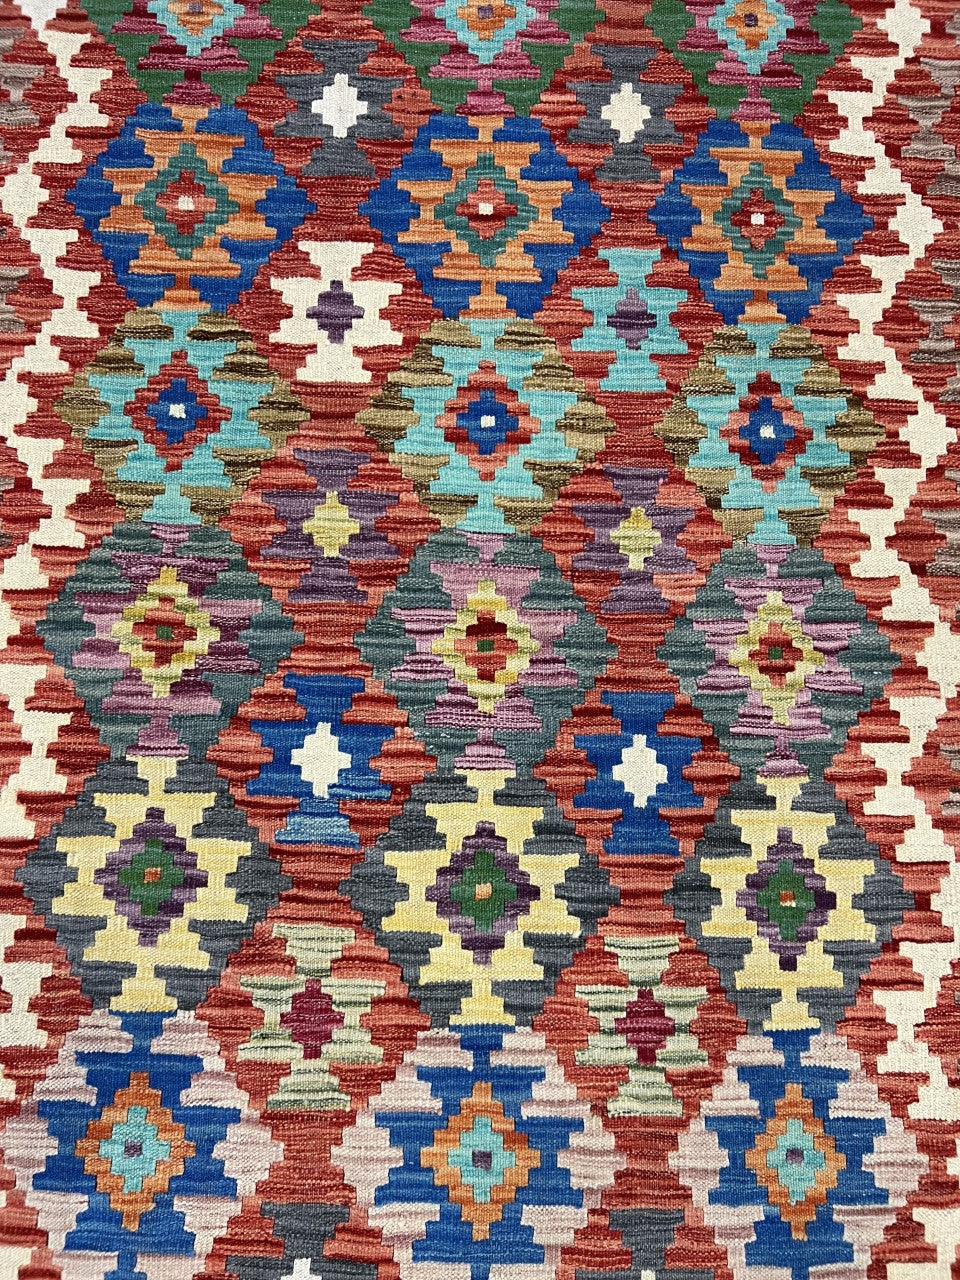 Wonderful Afghan Kilim new decorative rug - Hakiemie Rug Gallery